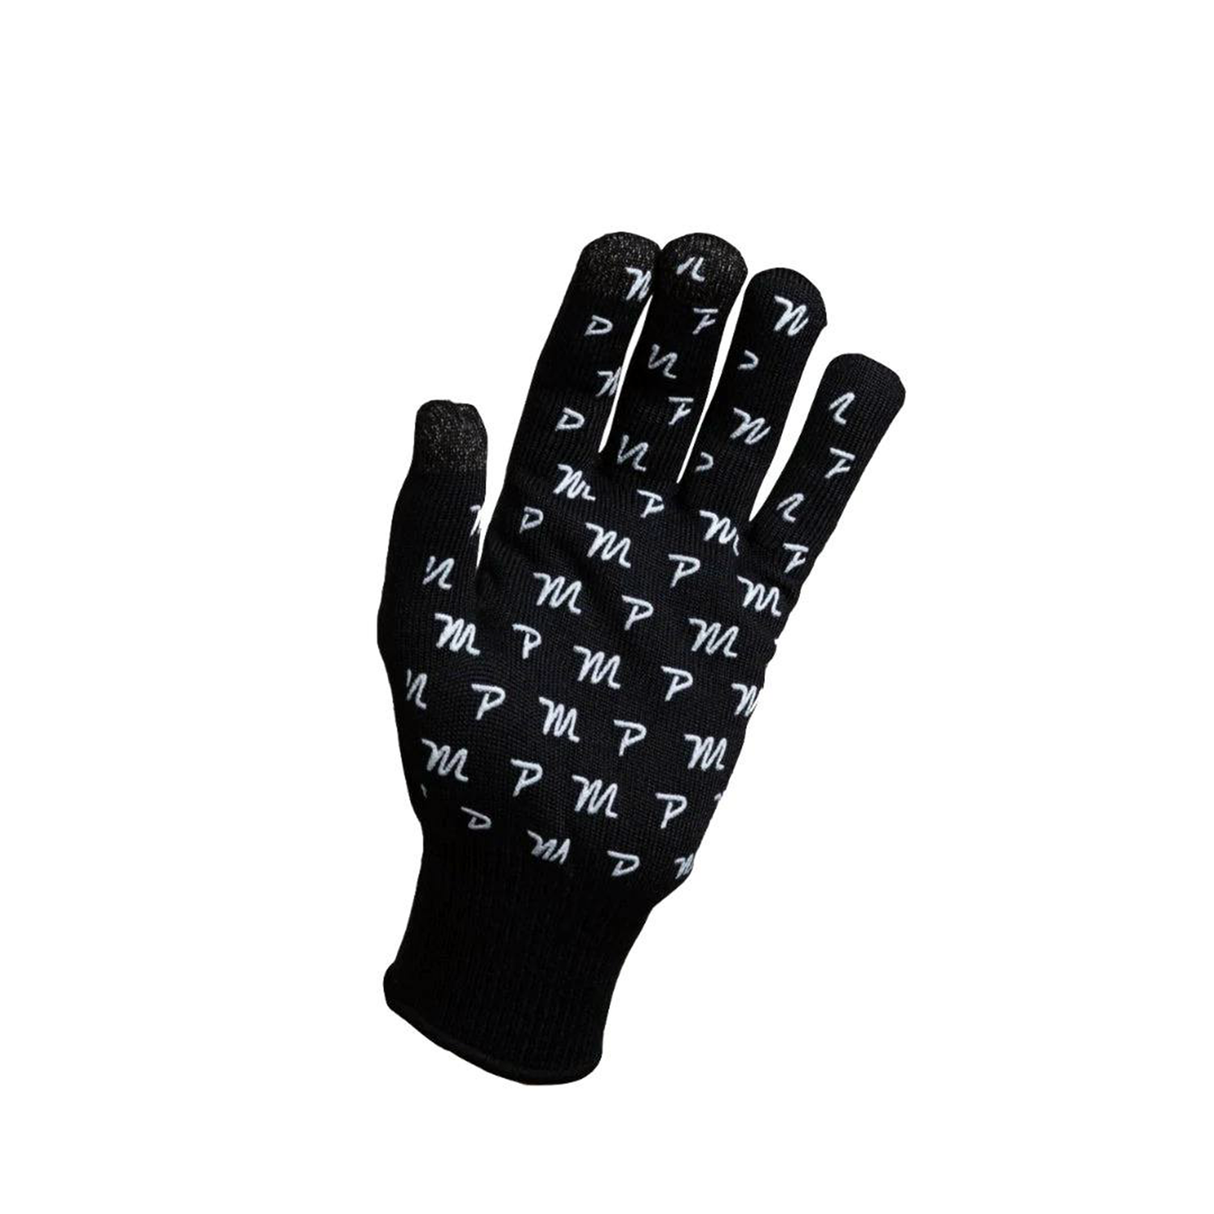 Pedal Mafia Woolen Blend Long Finger Glove - Black / White